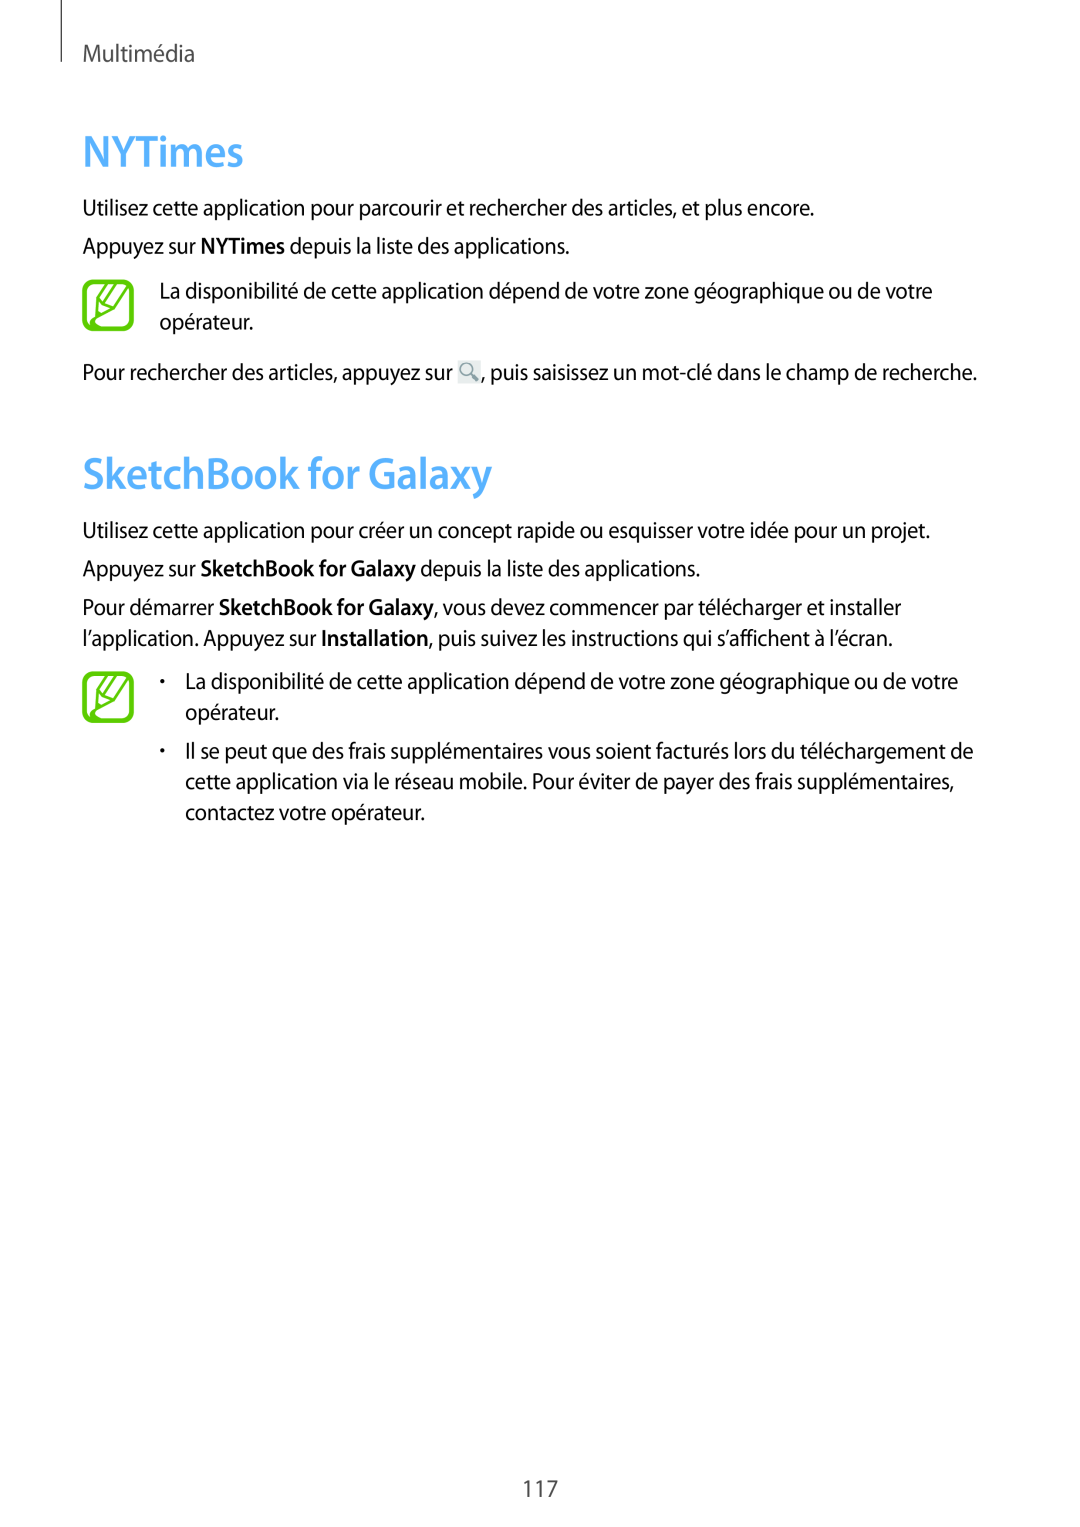 Samsung SM-P9050ZKAXEF, SM-P9050ZWAXEF manual NYTimes, SketchBook for Galaxy, Multimédia 